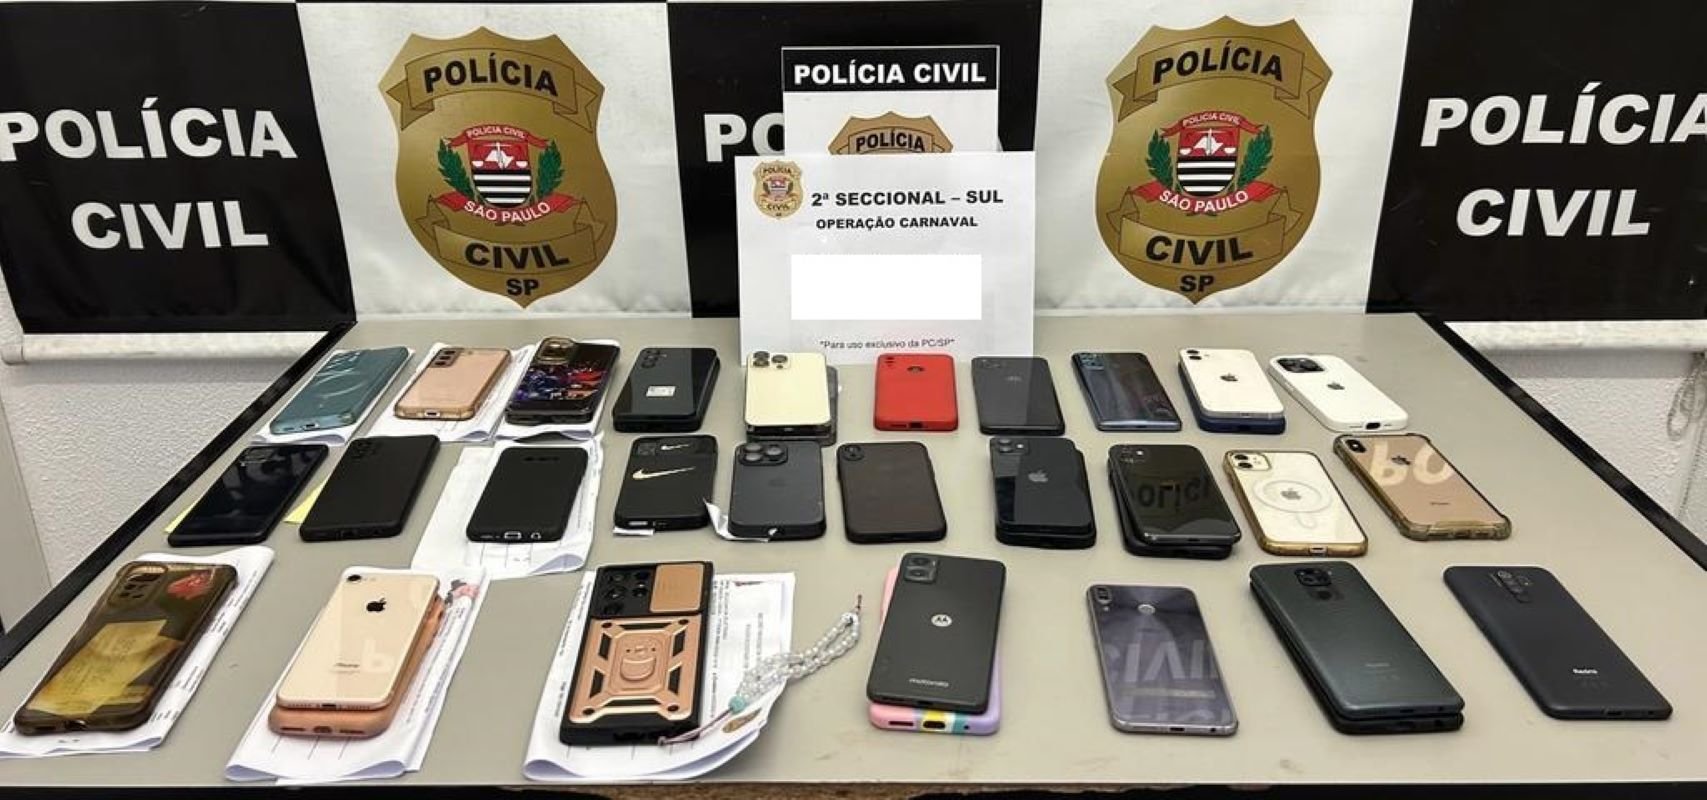 Imagem colorida mostra celulares recuperados pela Polícia no primeiro dia do Carnaval de São Paulo - Metrópoles